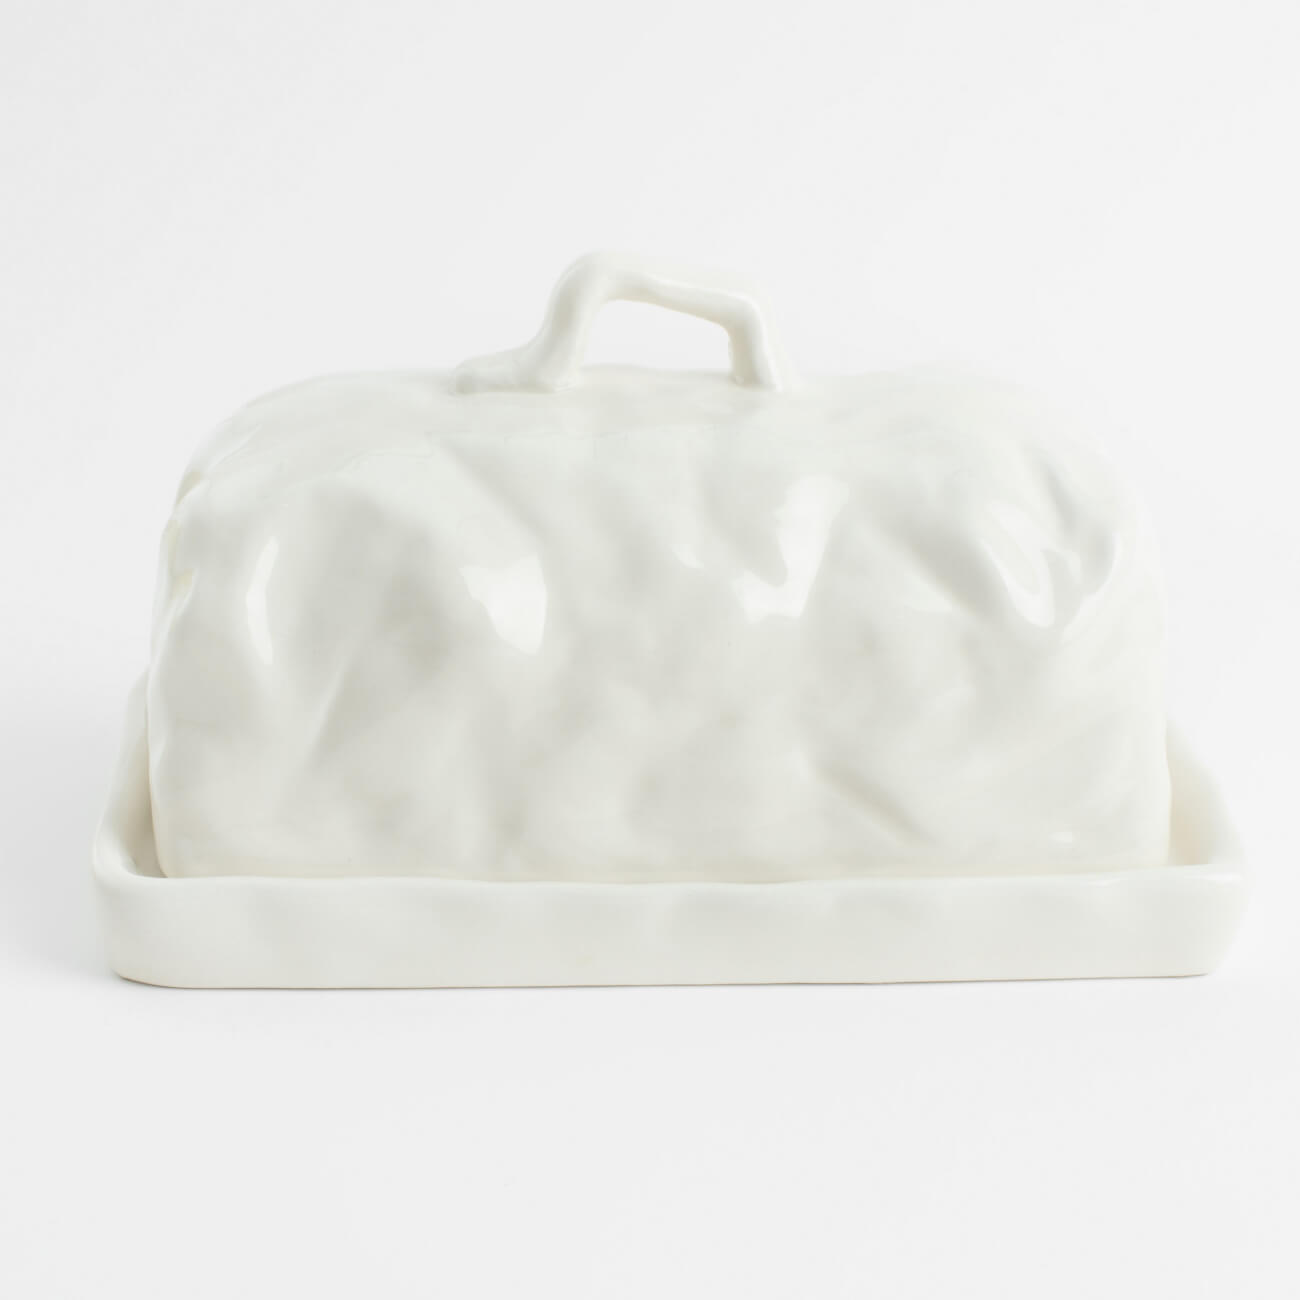 Масленка, 18 см, керамика, прямоугольная, молочная, Мятый эффект, Crumple ваза для ов 24 см керамика молочная мятый эффект crumple